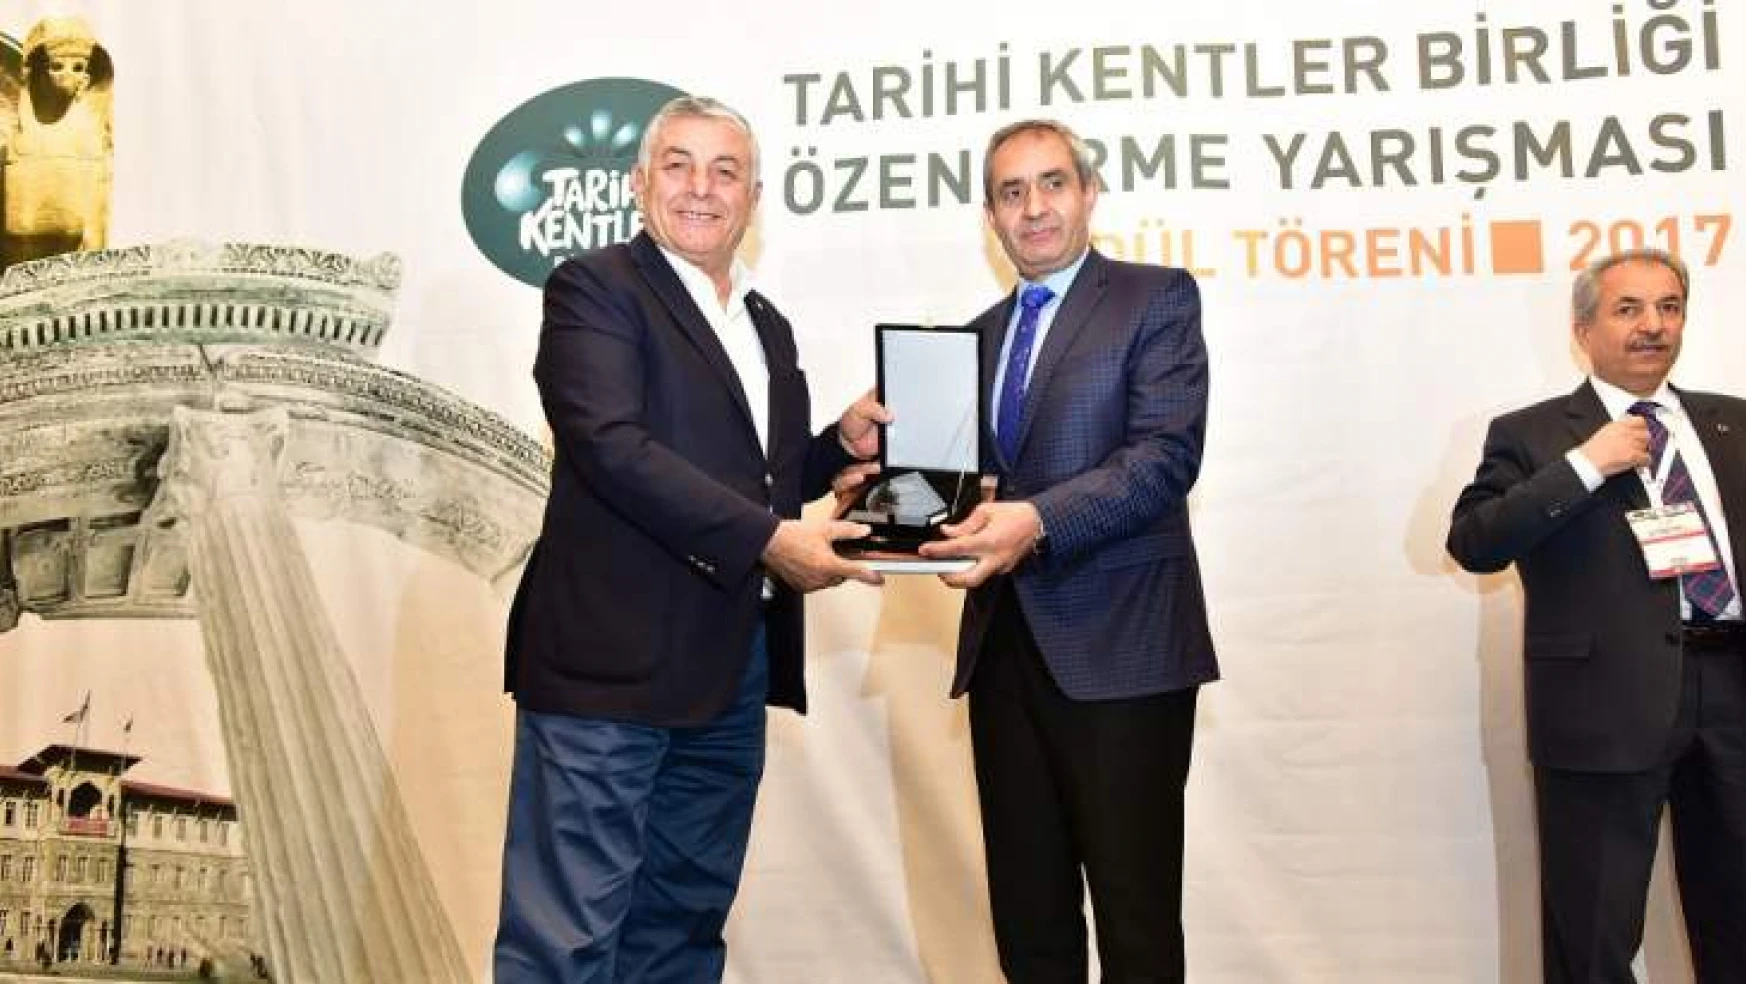 Tkb Tarafından Başkan Gürkan'a Bir Ödül Daha Verildi